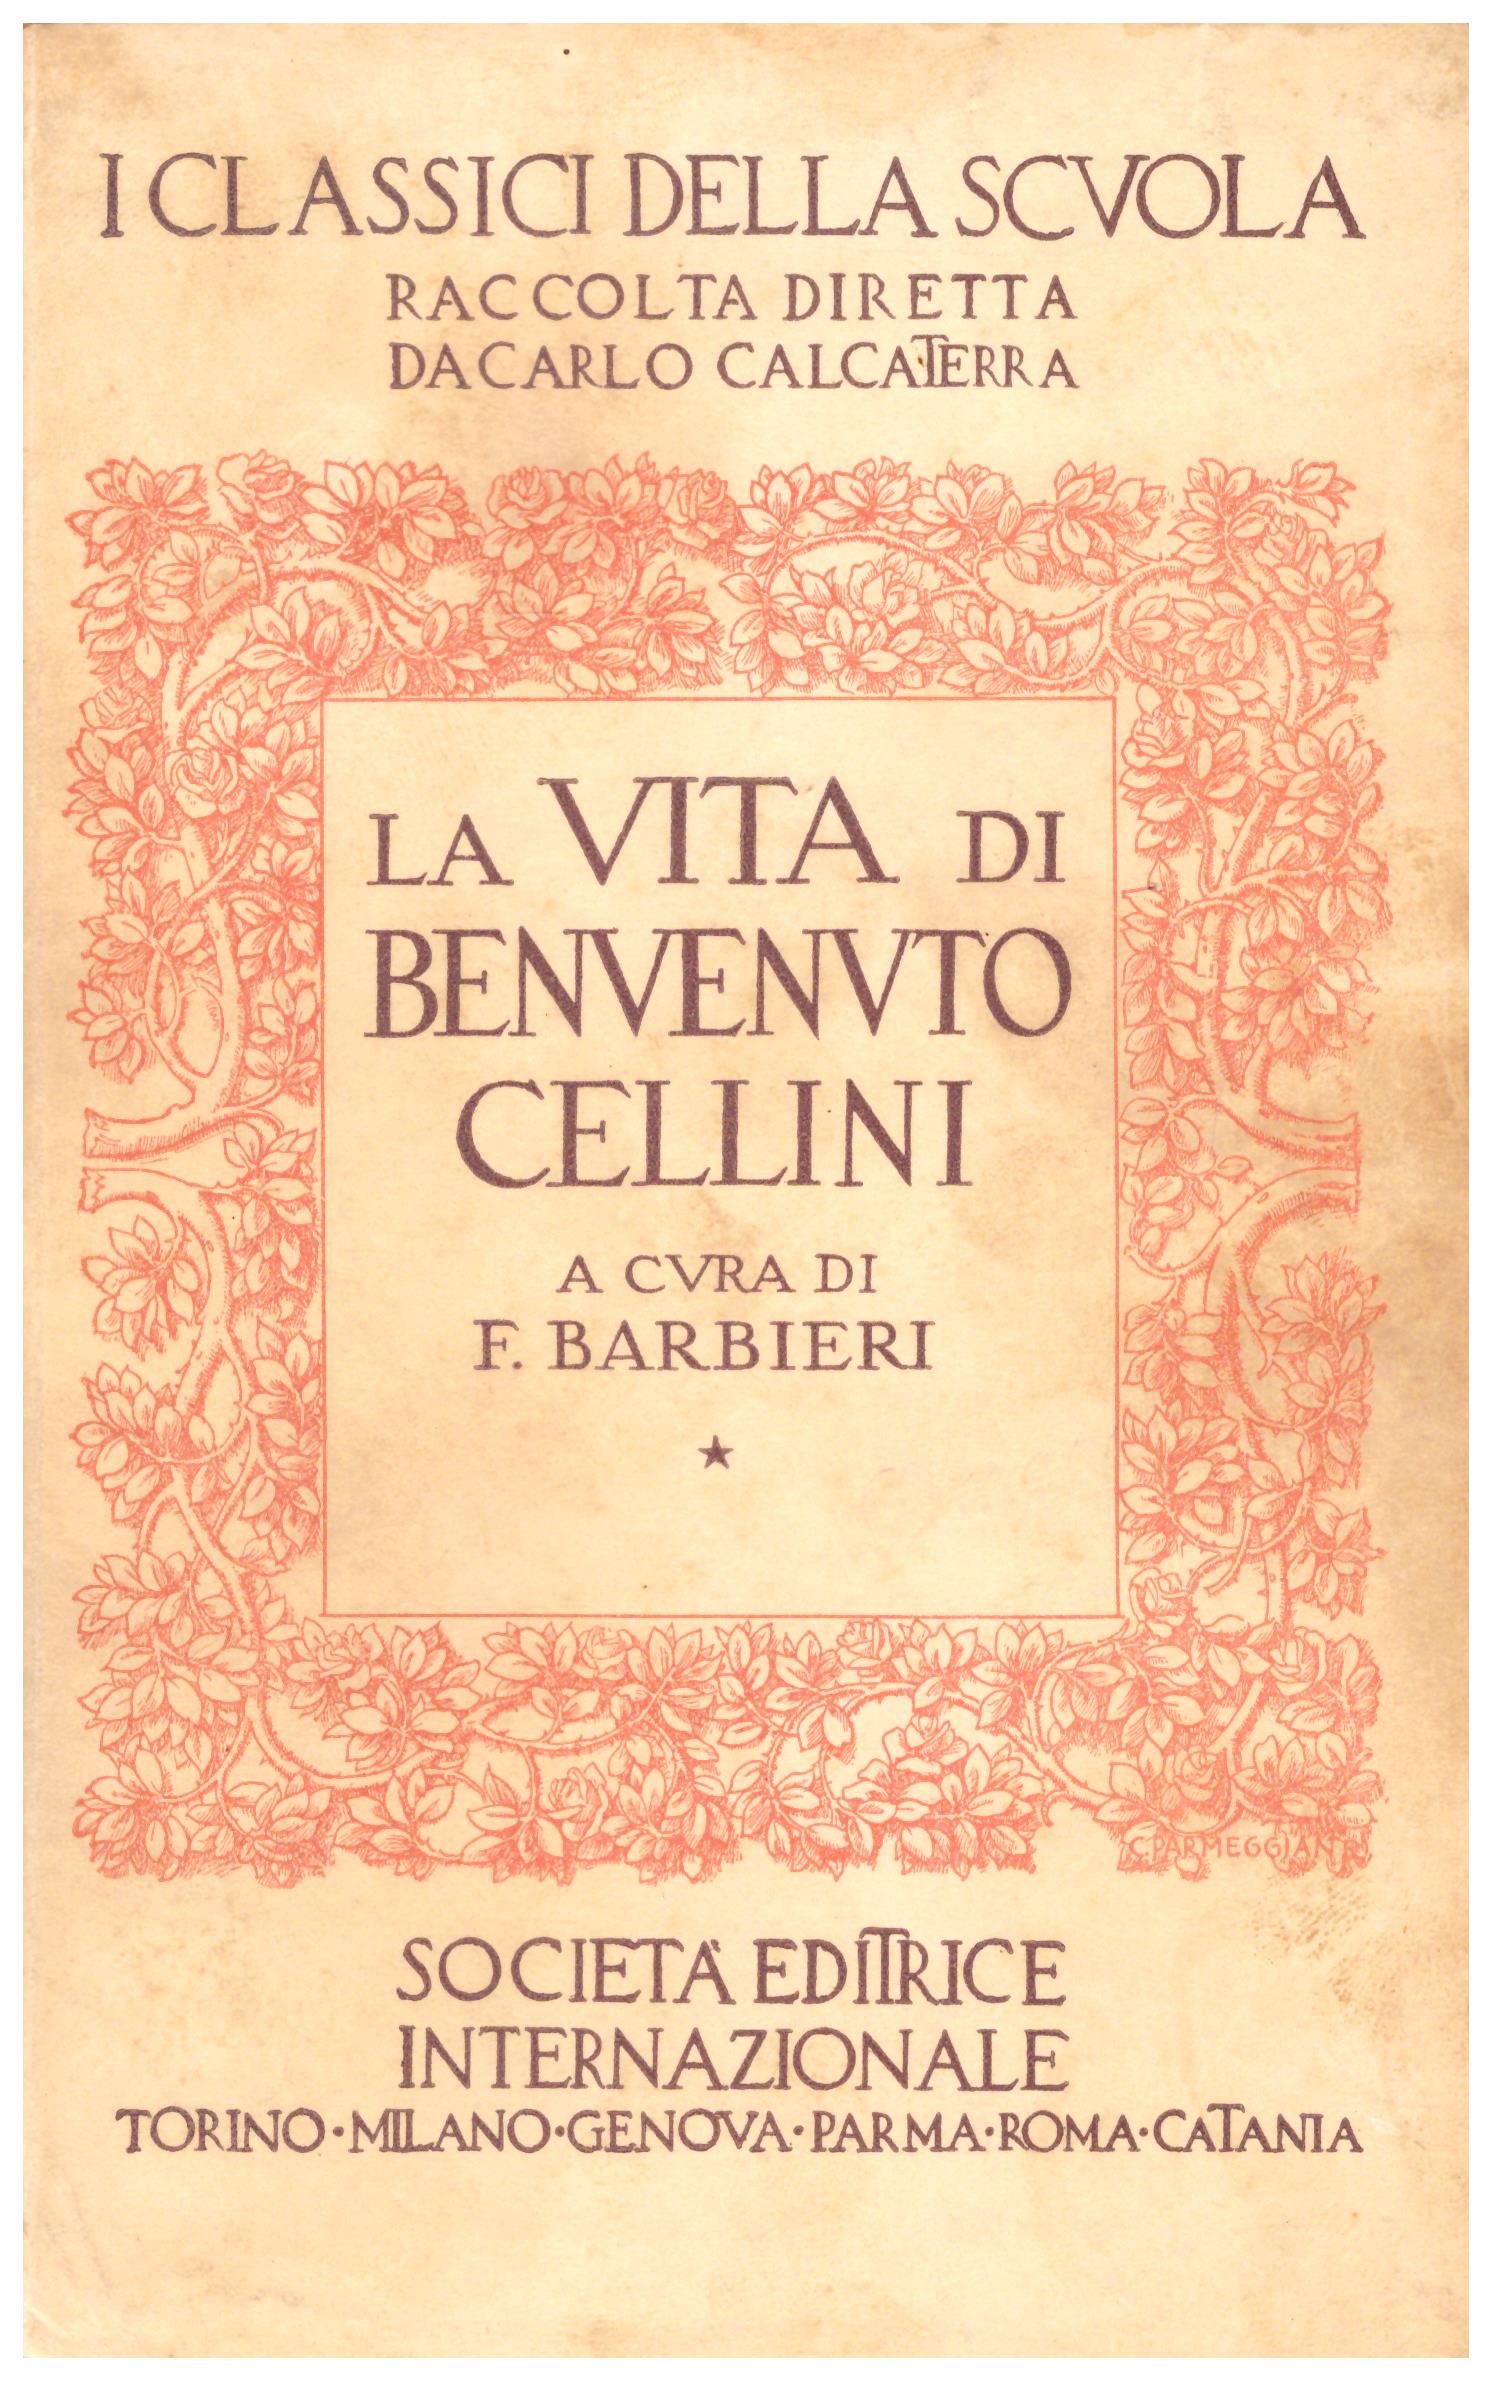 Titolo: La vita Autore : Benvenuto Cellini, A cura di F. Barbieri Editore: società editrice internazionale, 1940